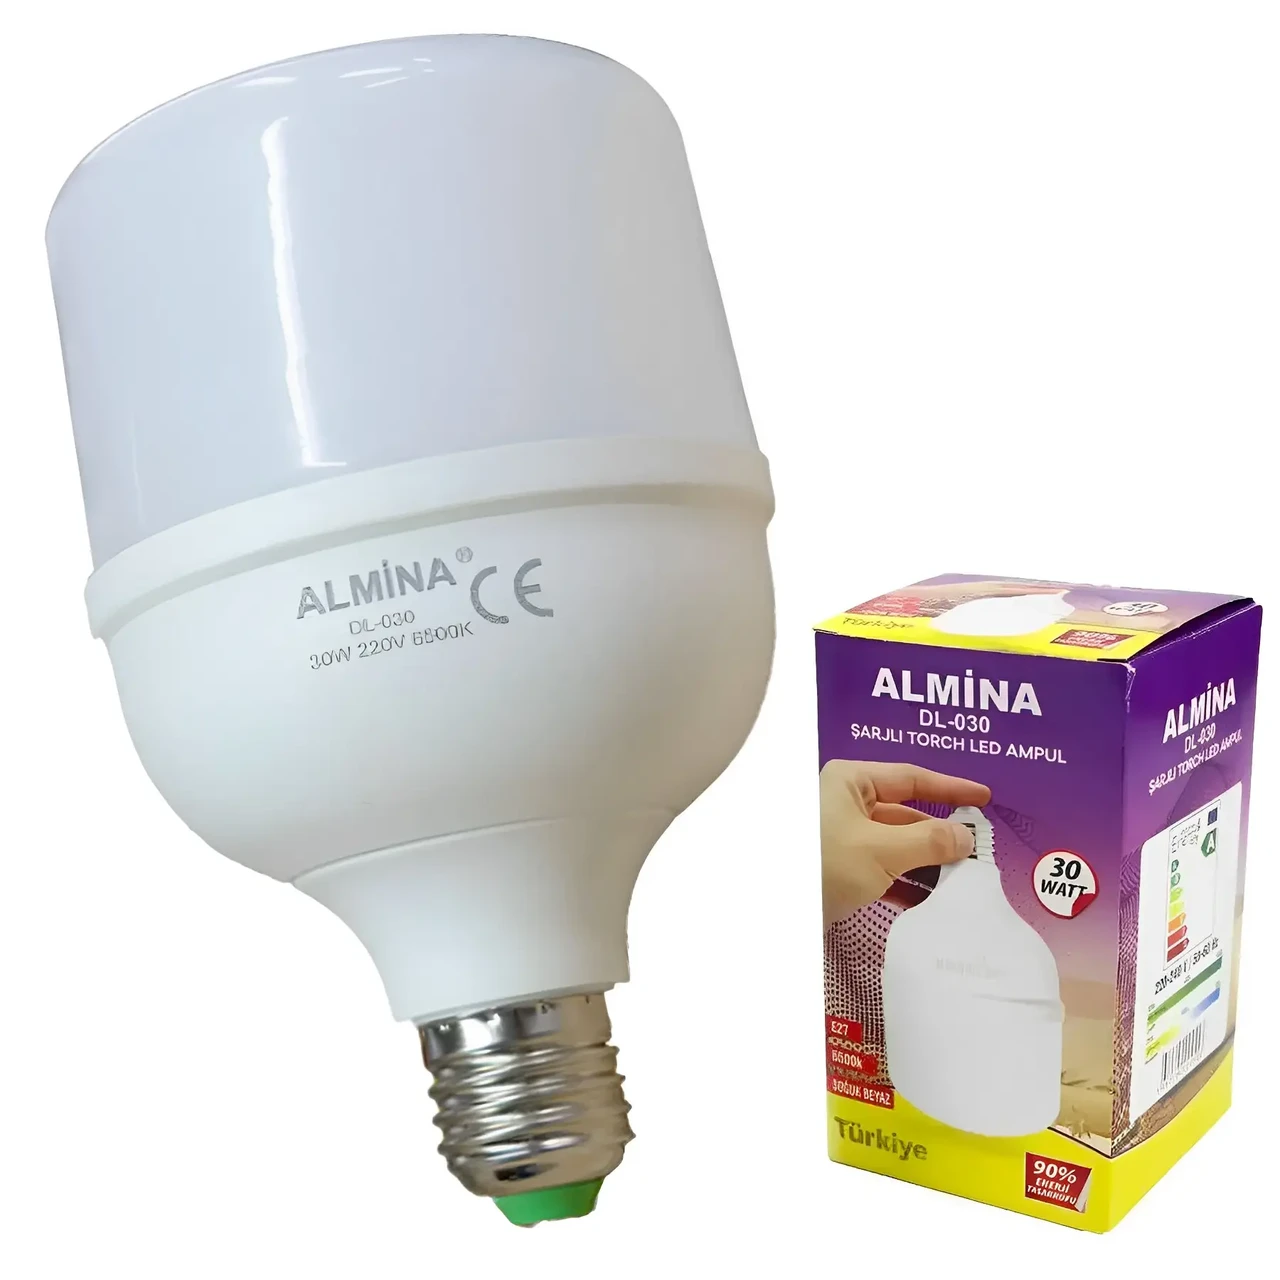 Акумуляторна лампа Almina DL-020/30 Вт, Цоколь Е 27